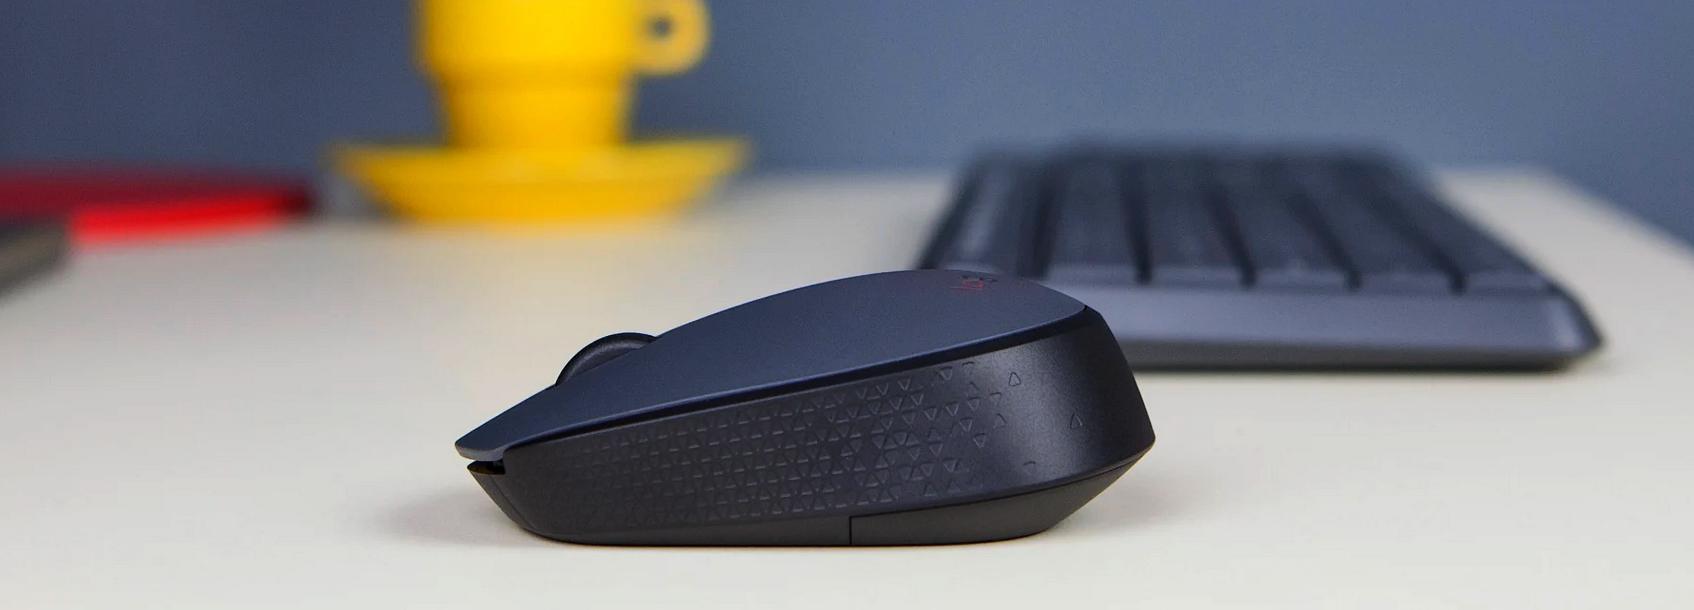 Logitech MK235 - bezprzewodowa mysz komputerowa o dużej ergonomii, dostosowana do obsługi obiema dłońmi